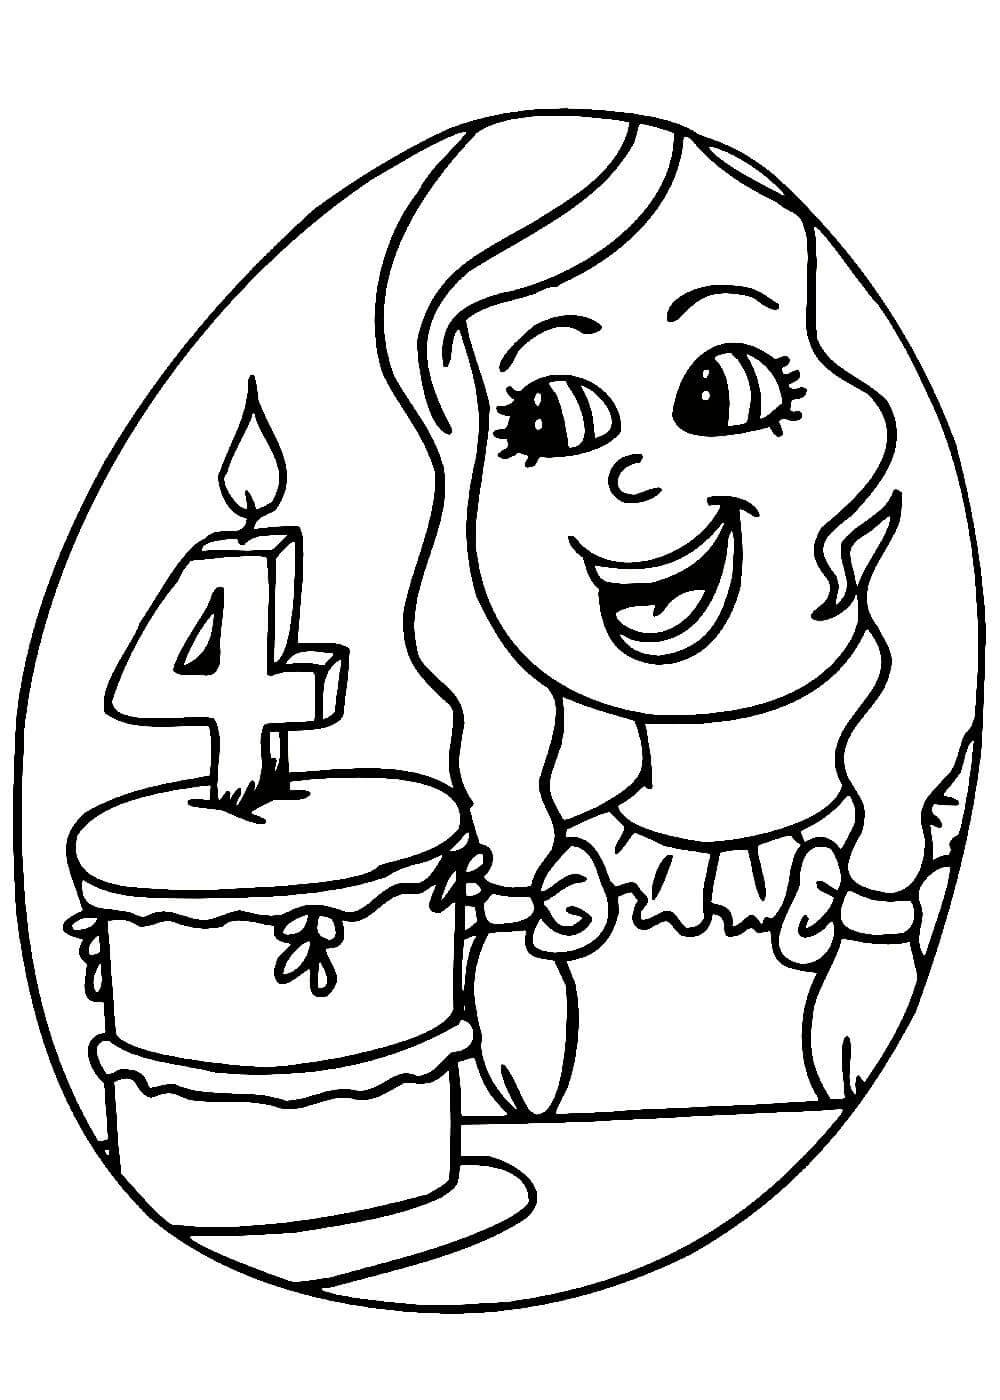 Раскраска с днём рождения для девочки